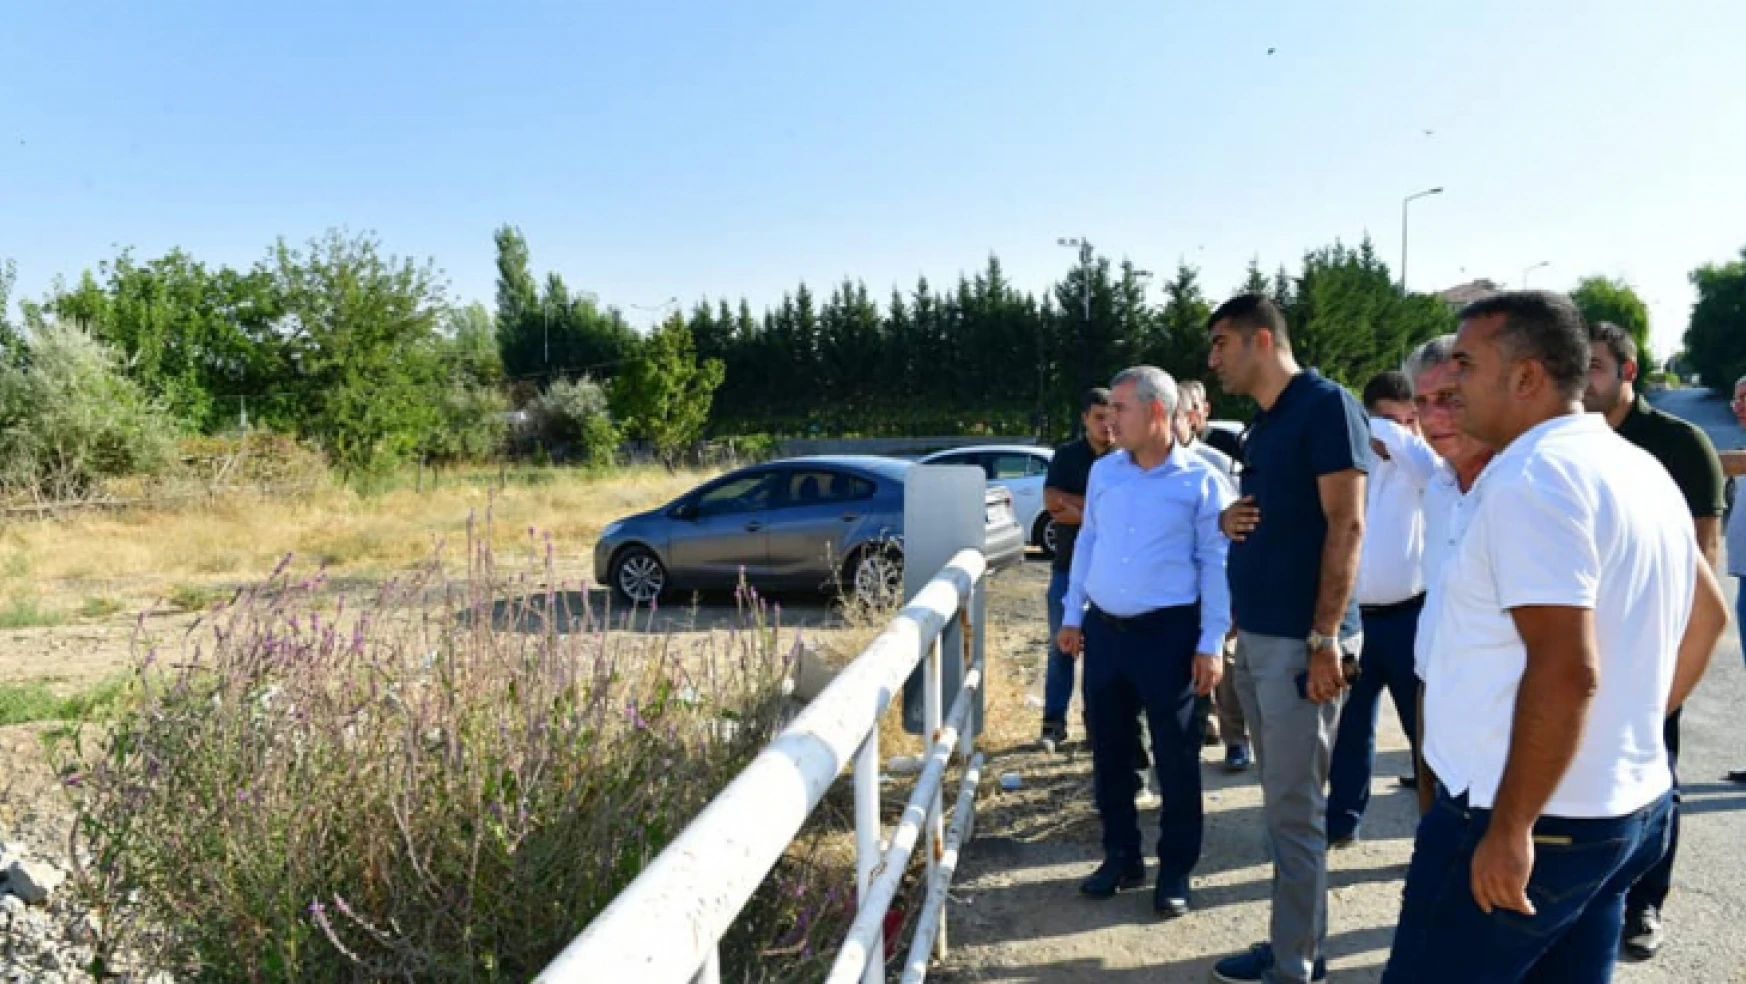 Yeşilyurt Belediyesi, 'Barguzu Kanalboyu Park' Projesiyle İlçeye Yeni Bir Cazibe Merkezi Daha Kazandıracak